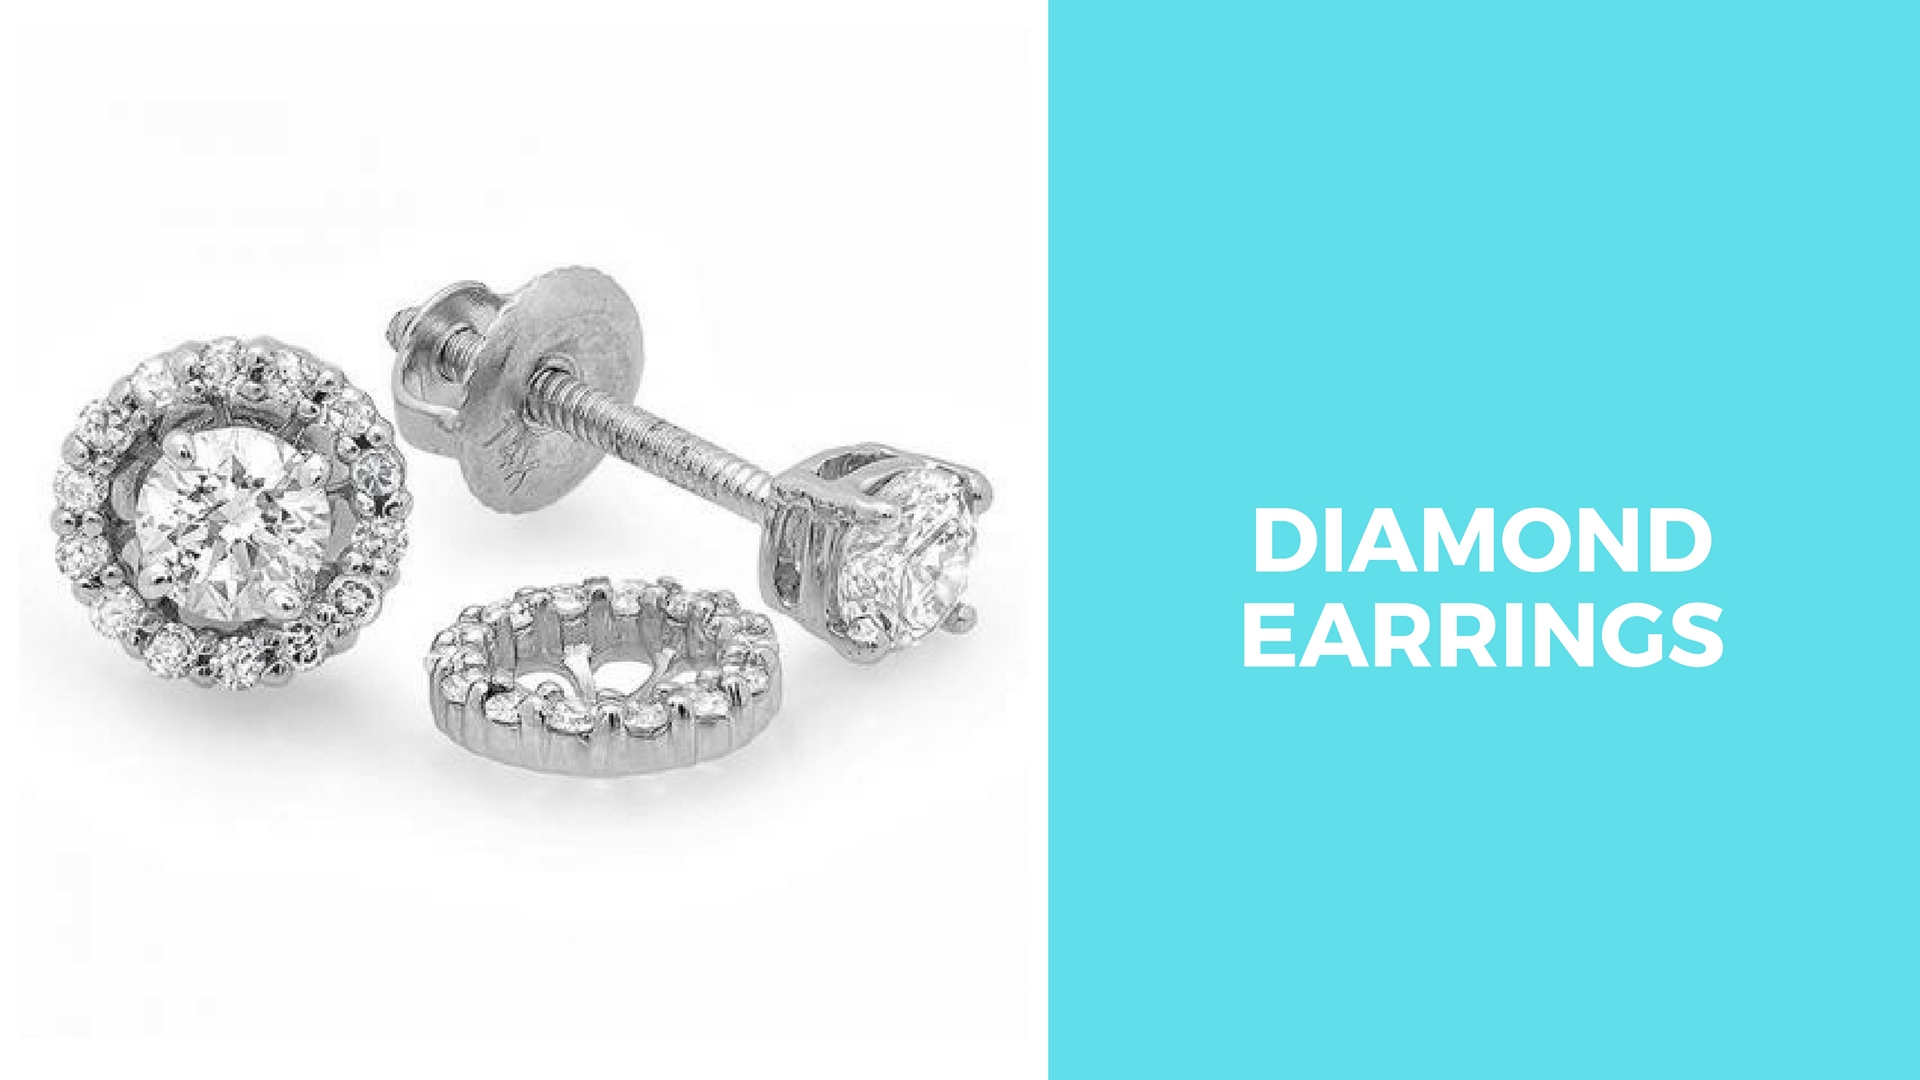 Diamond Earrings - Must Have Jewelry for women